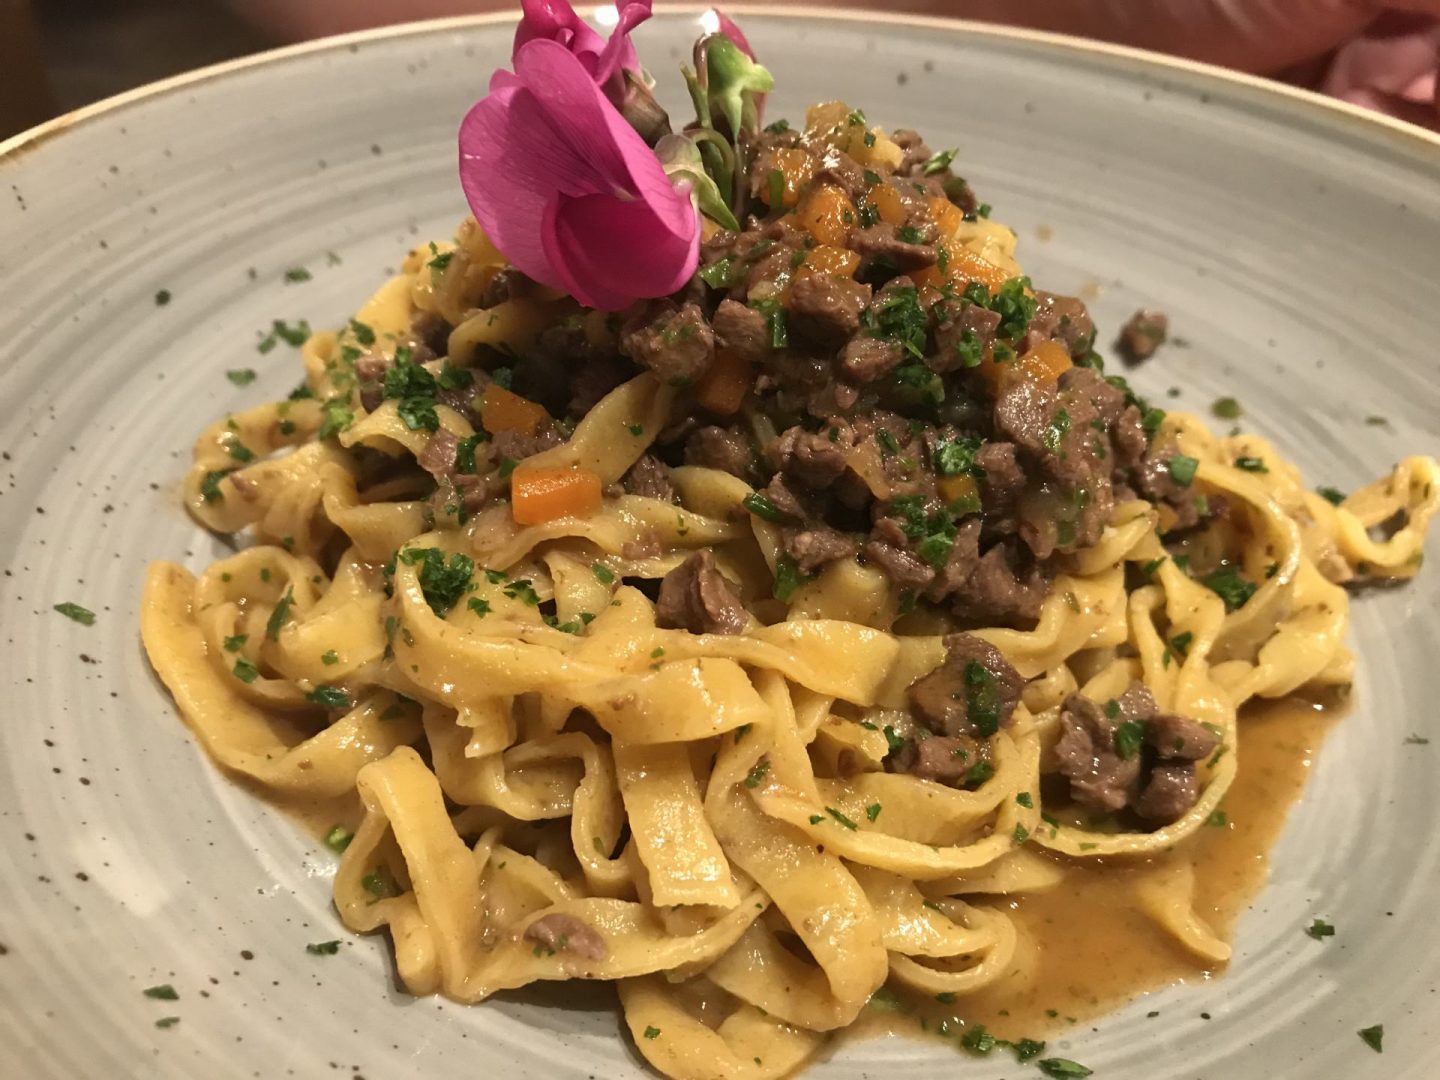 Erfahrung Bewertung Kritik Hotel Restaurant Pardeller Tagliatelle mit Wildragout Welschnofen Südtirol Foodblog Sternestulle